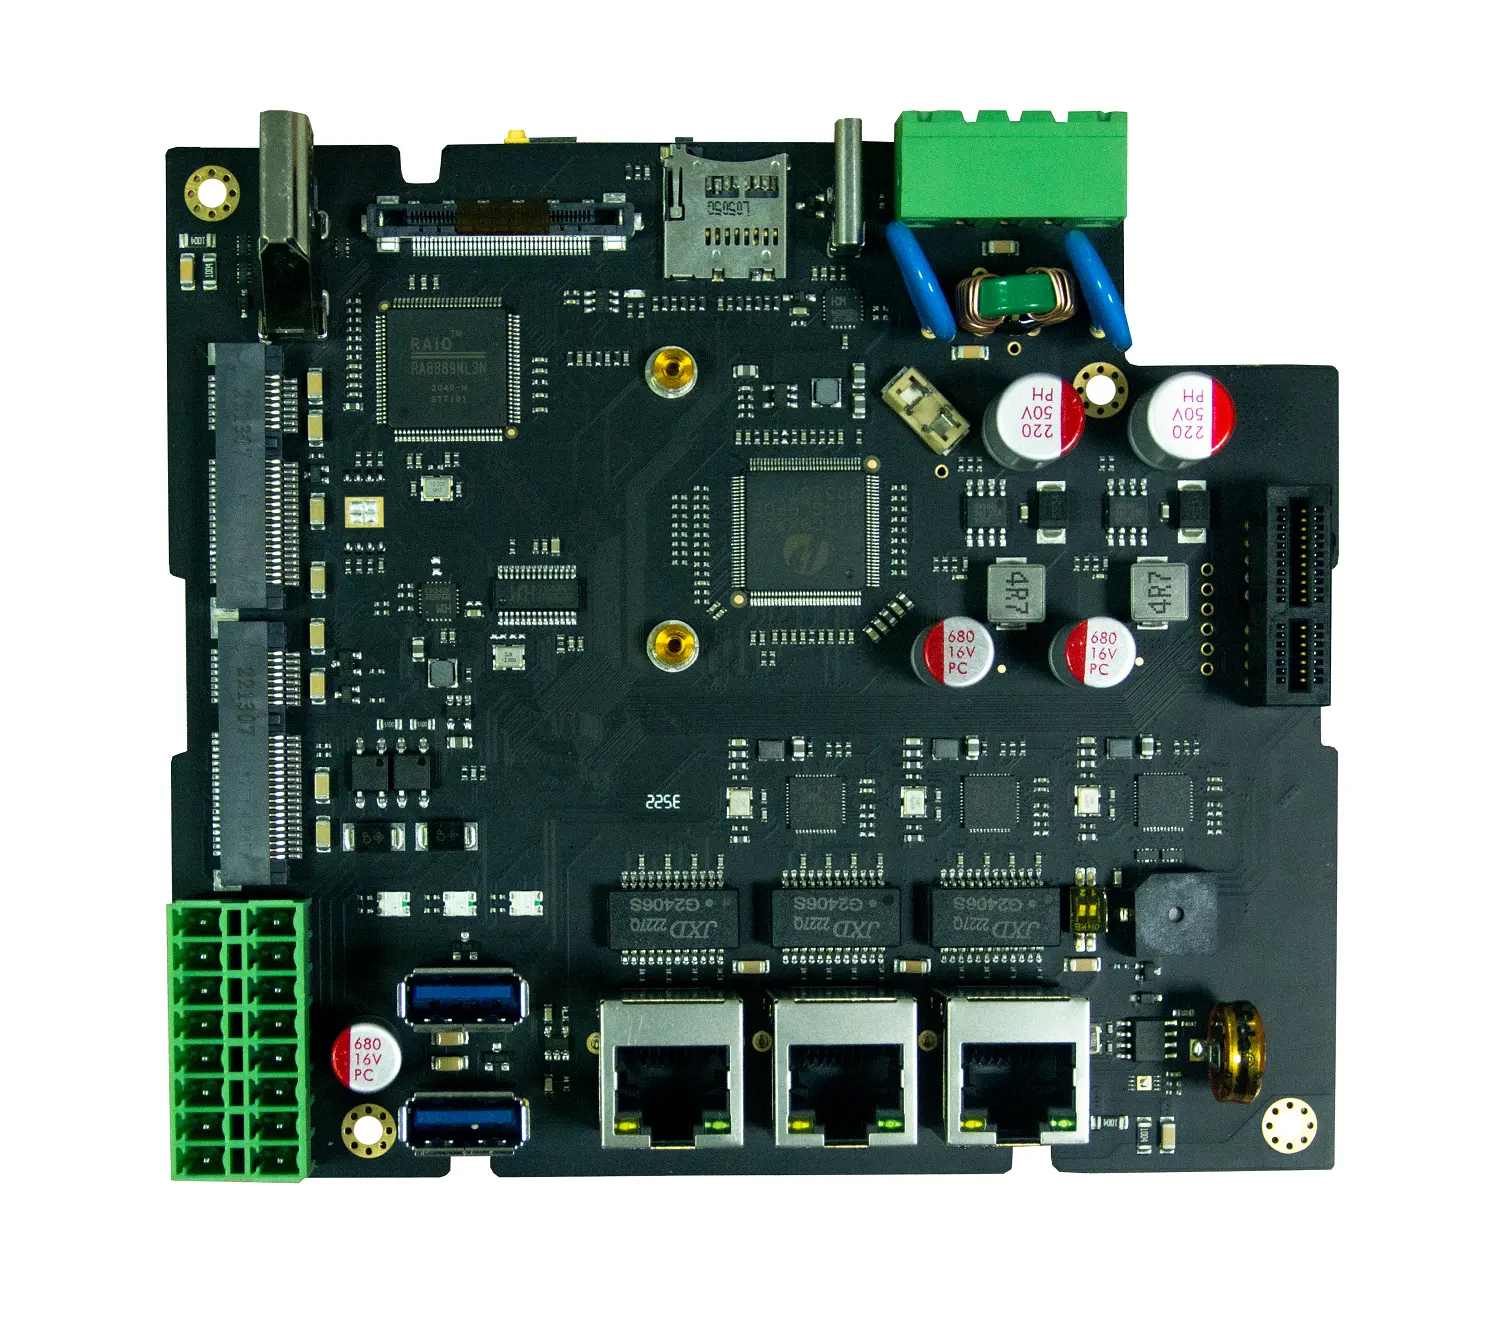 Pengontrol untuk aplikasi sistem daya dengan RS485, RJ45, soket PCIe Mini dengan kartu SIM, Port USB 2.0, HDMI, DI, DO, BISA BUS